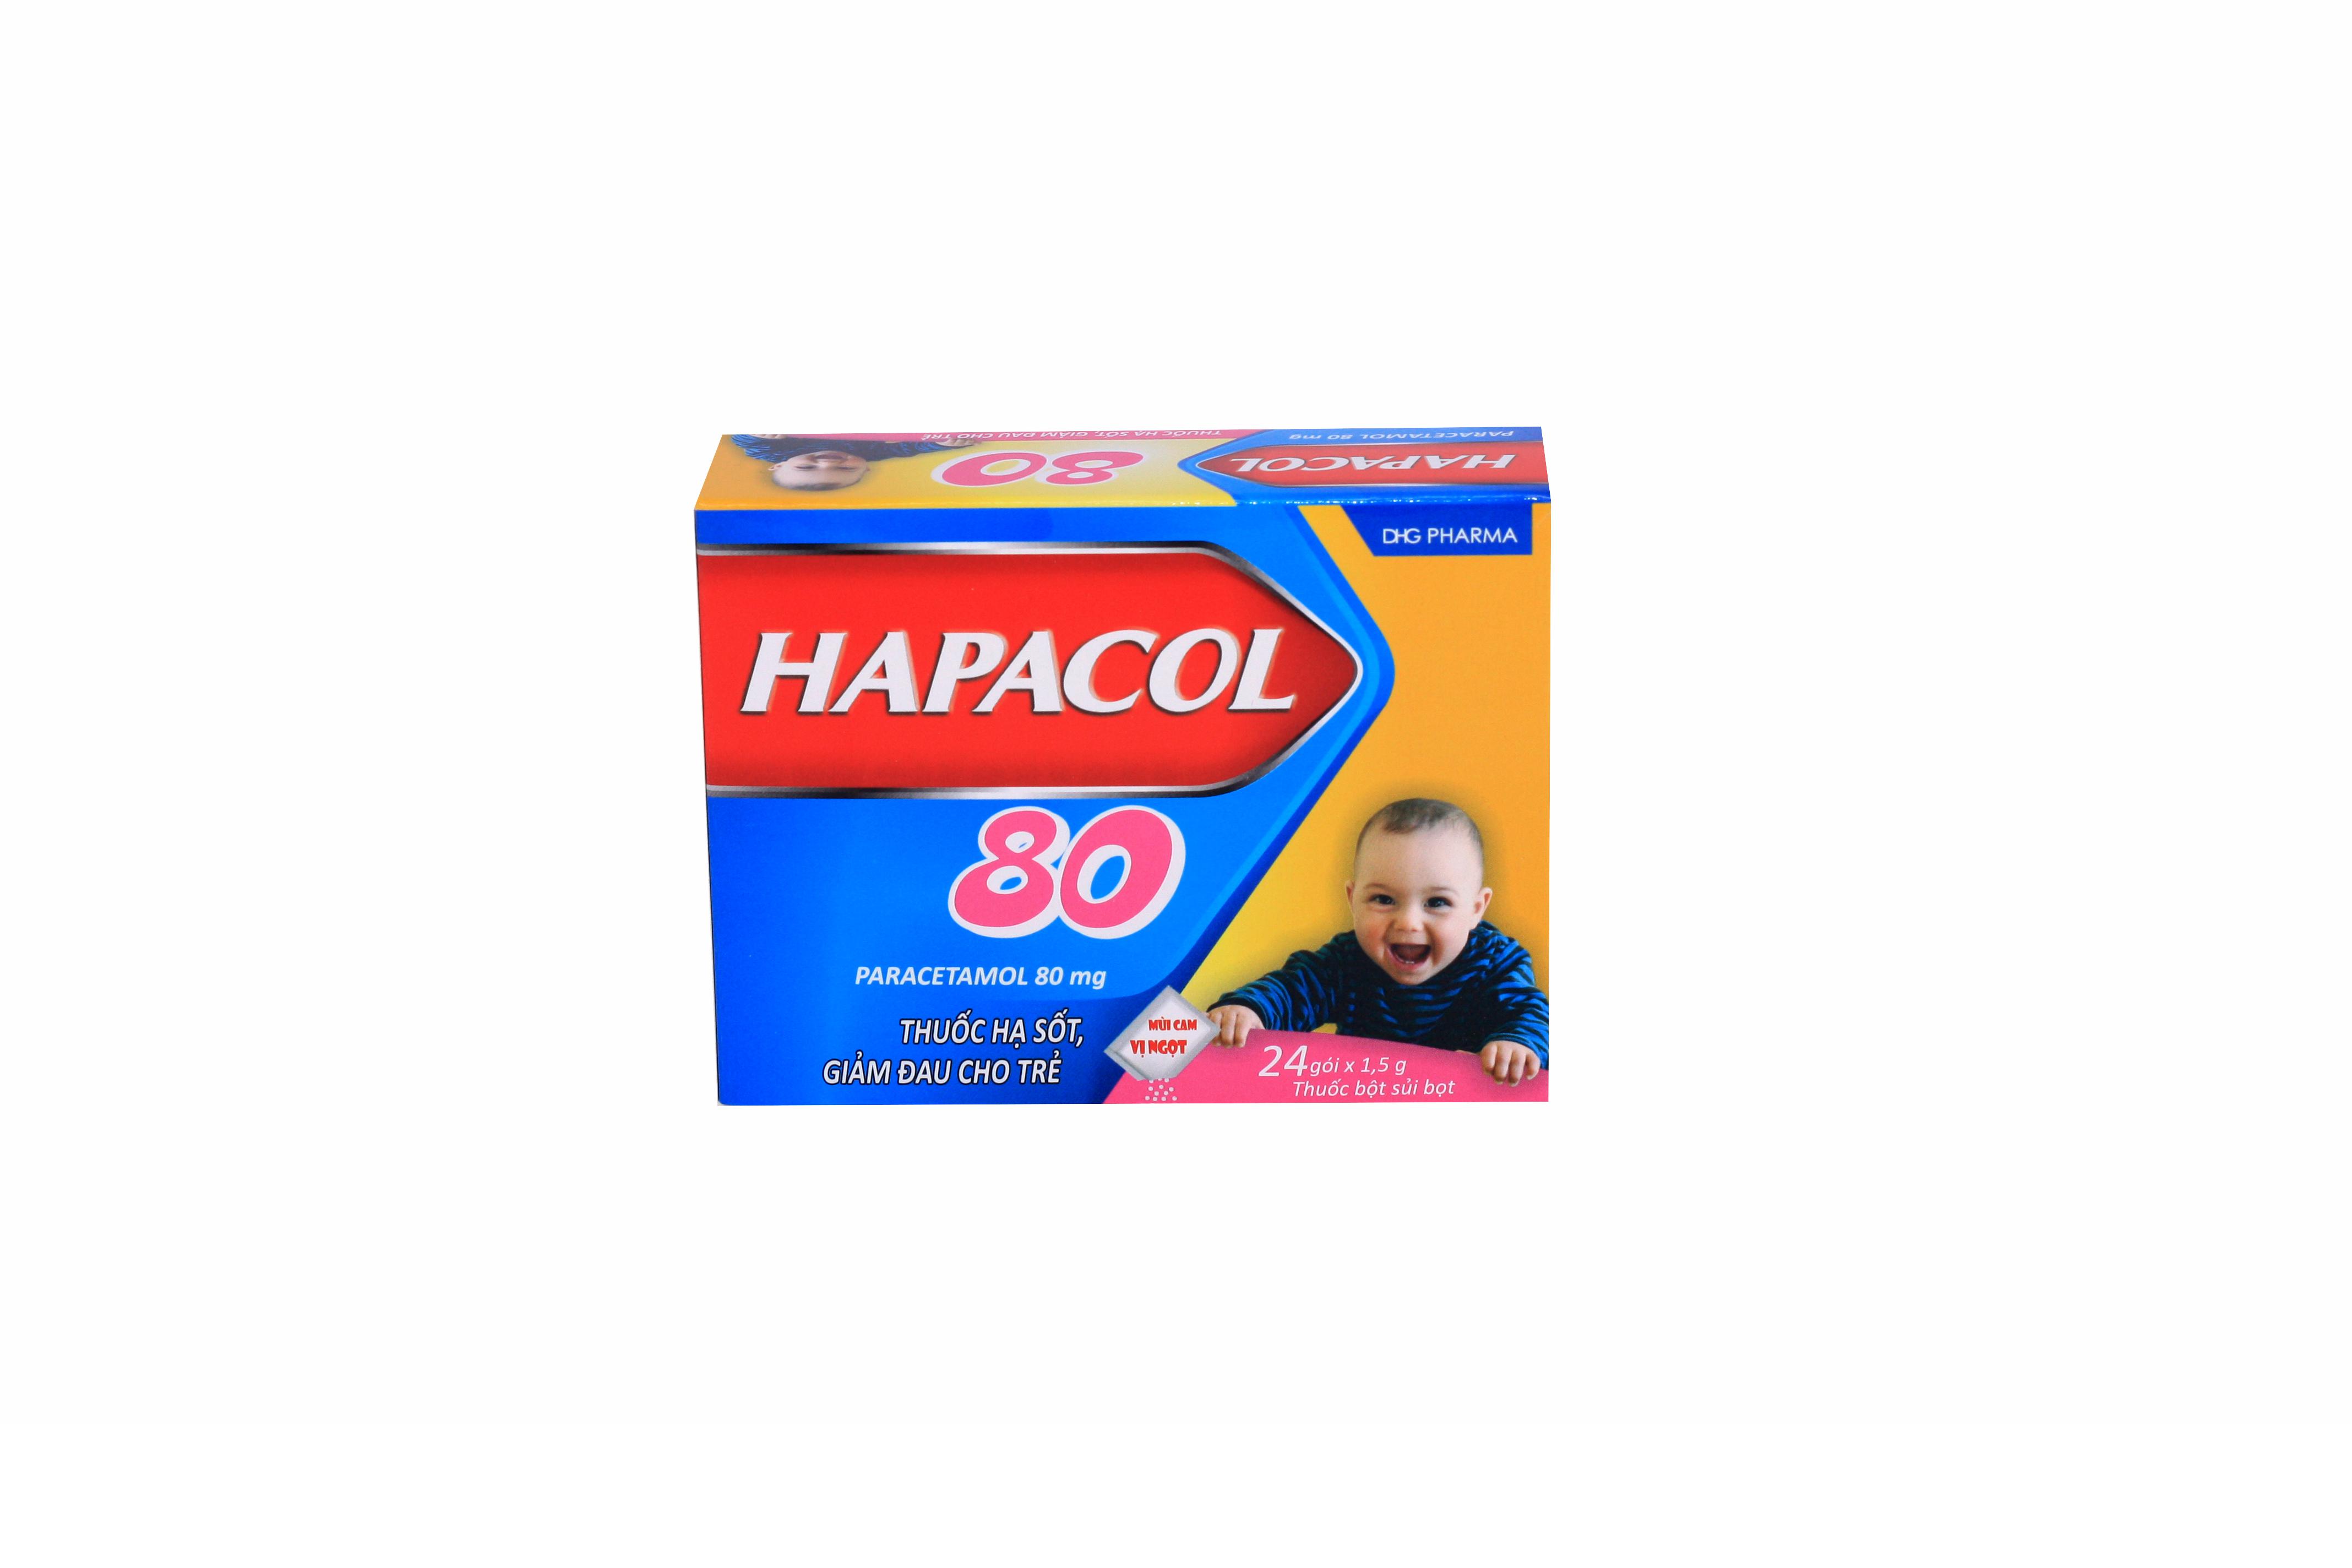 Hapacol 80mg (Paracetamol) DHG Pharma (H/24g)